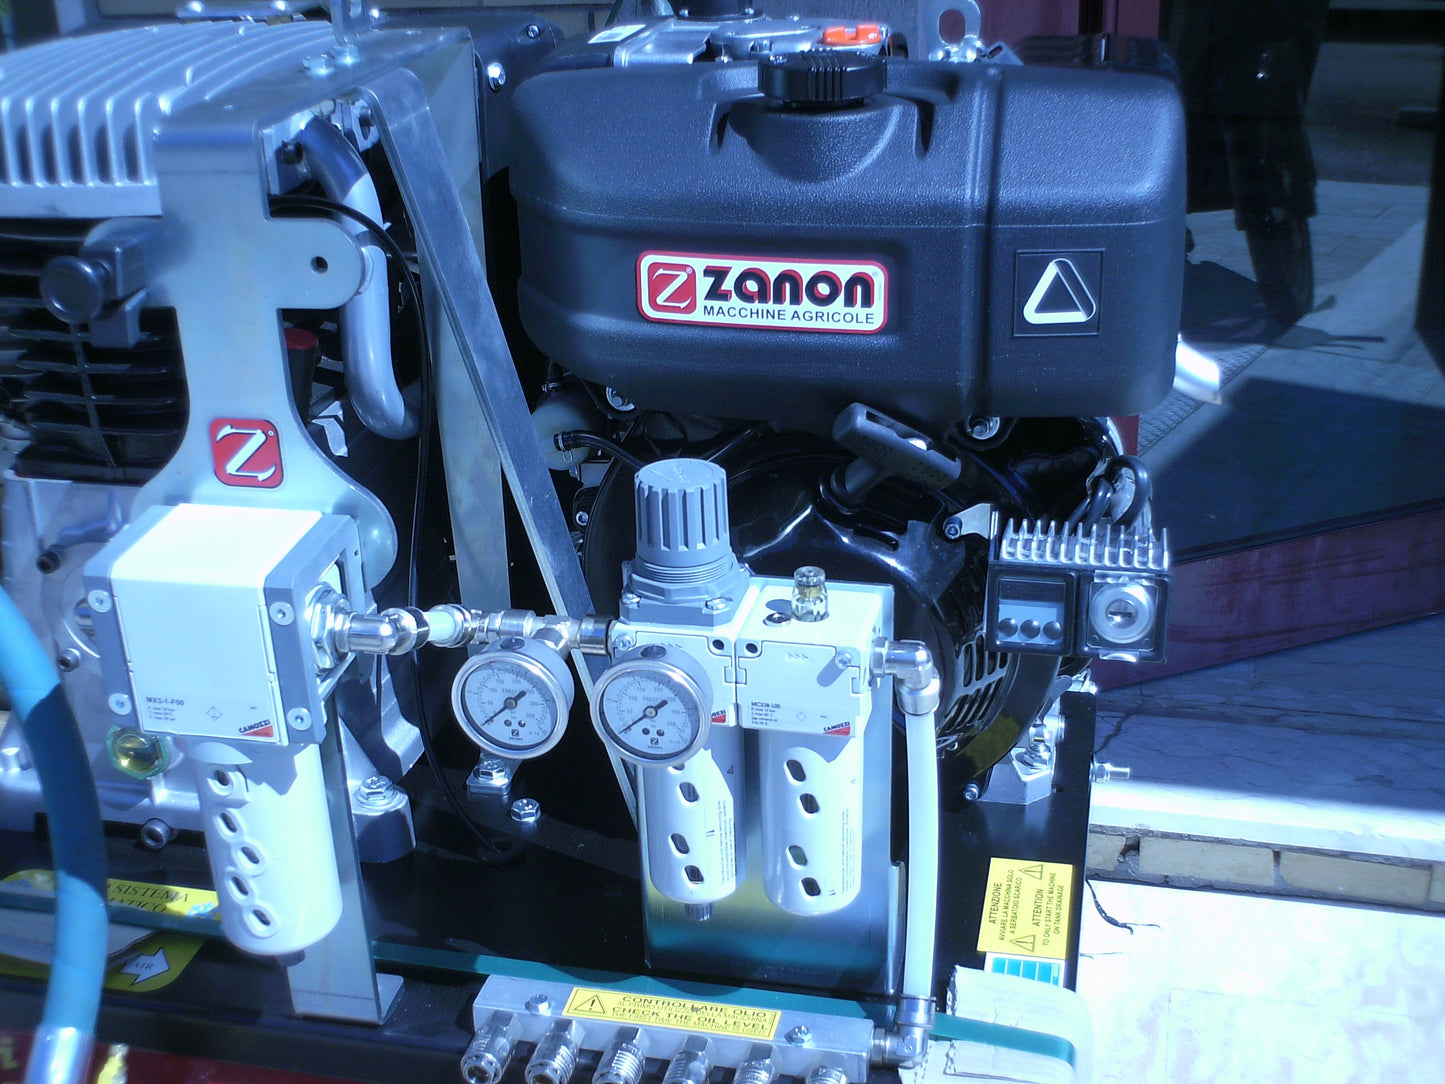 Motocompressore ZANON COMBI CAR 1250